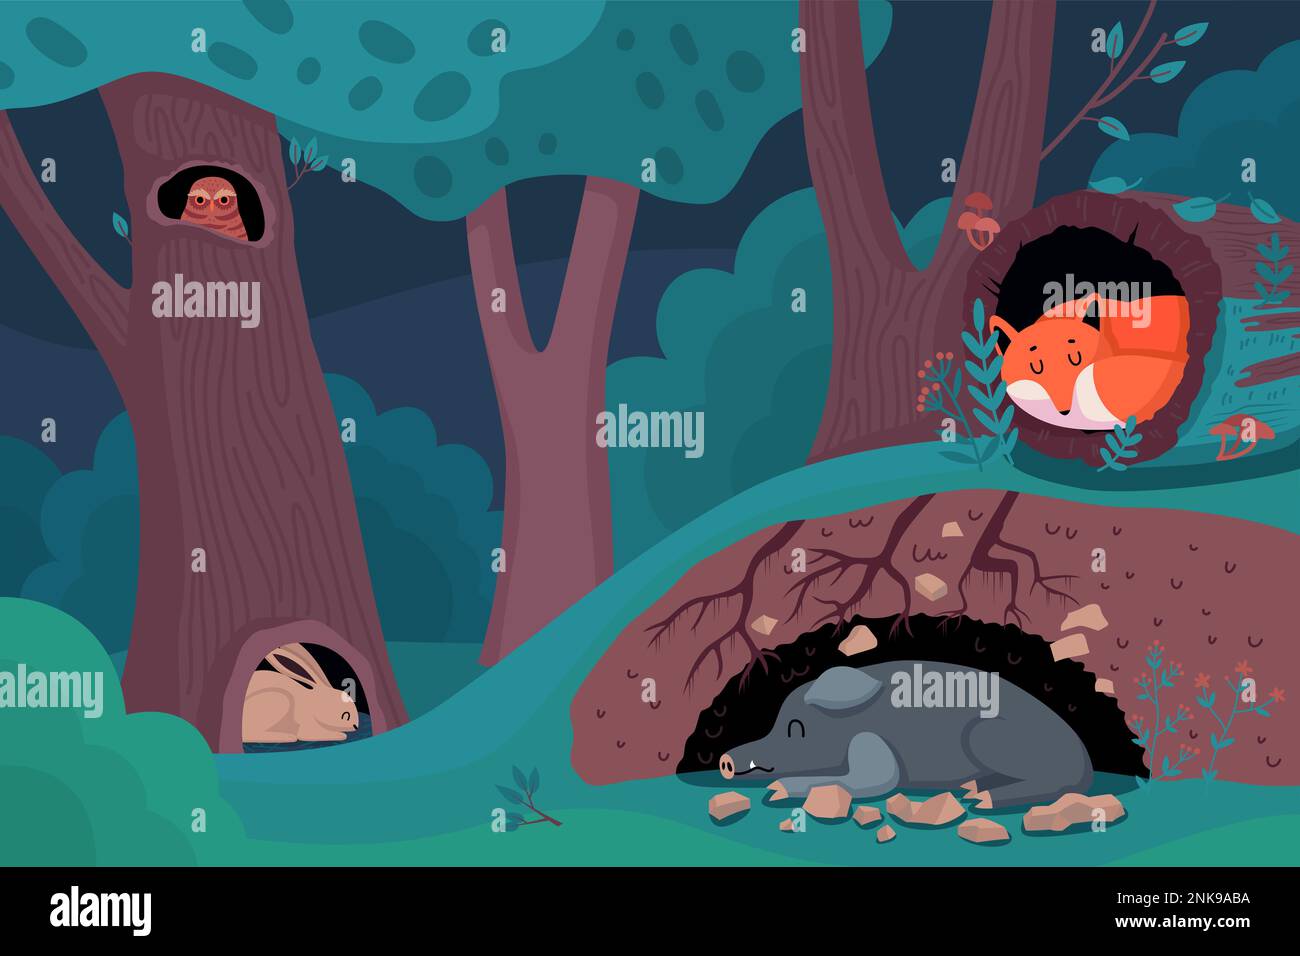 Noche en fondo de dibujos animados del bosque con animales salvajes durmiendo en árbol hueco o madriguera plana ilustración vectorial Ilustración del Vector